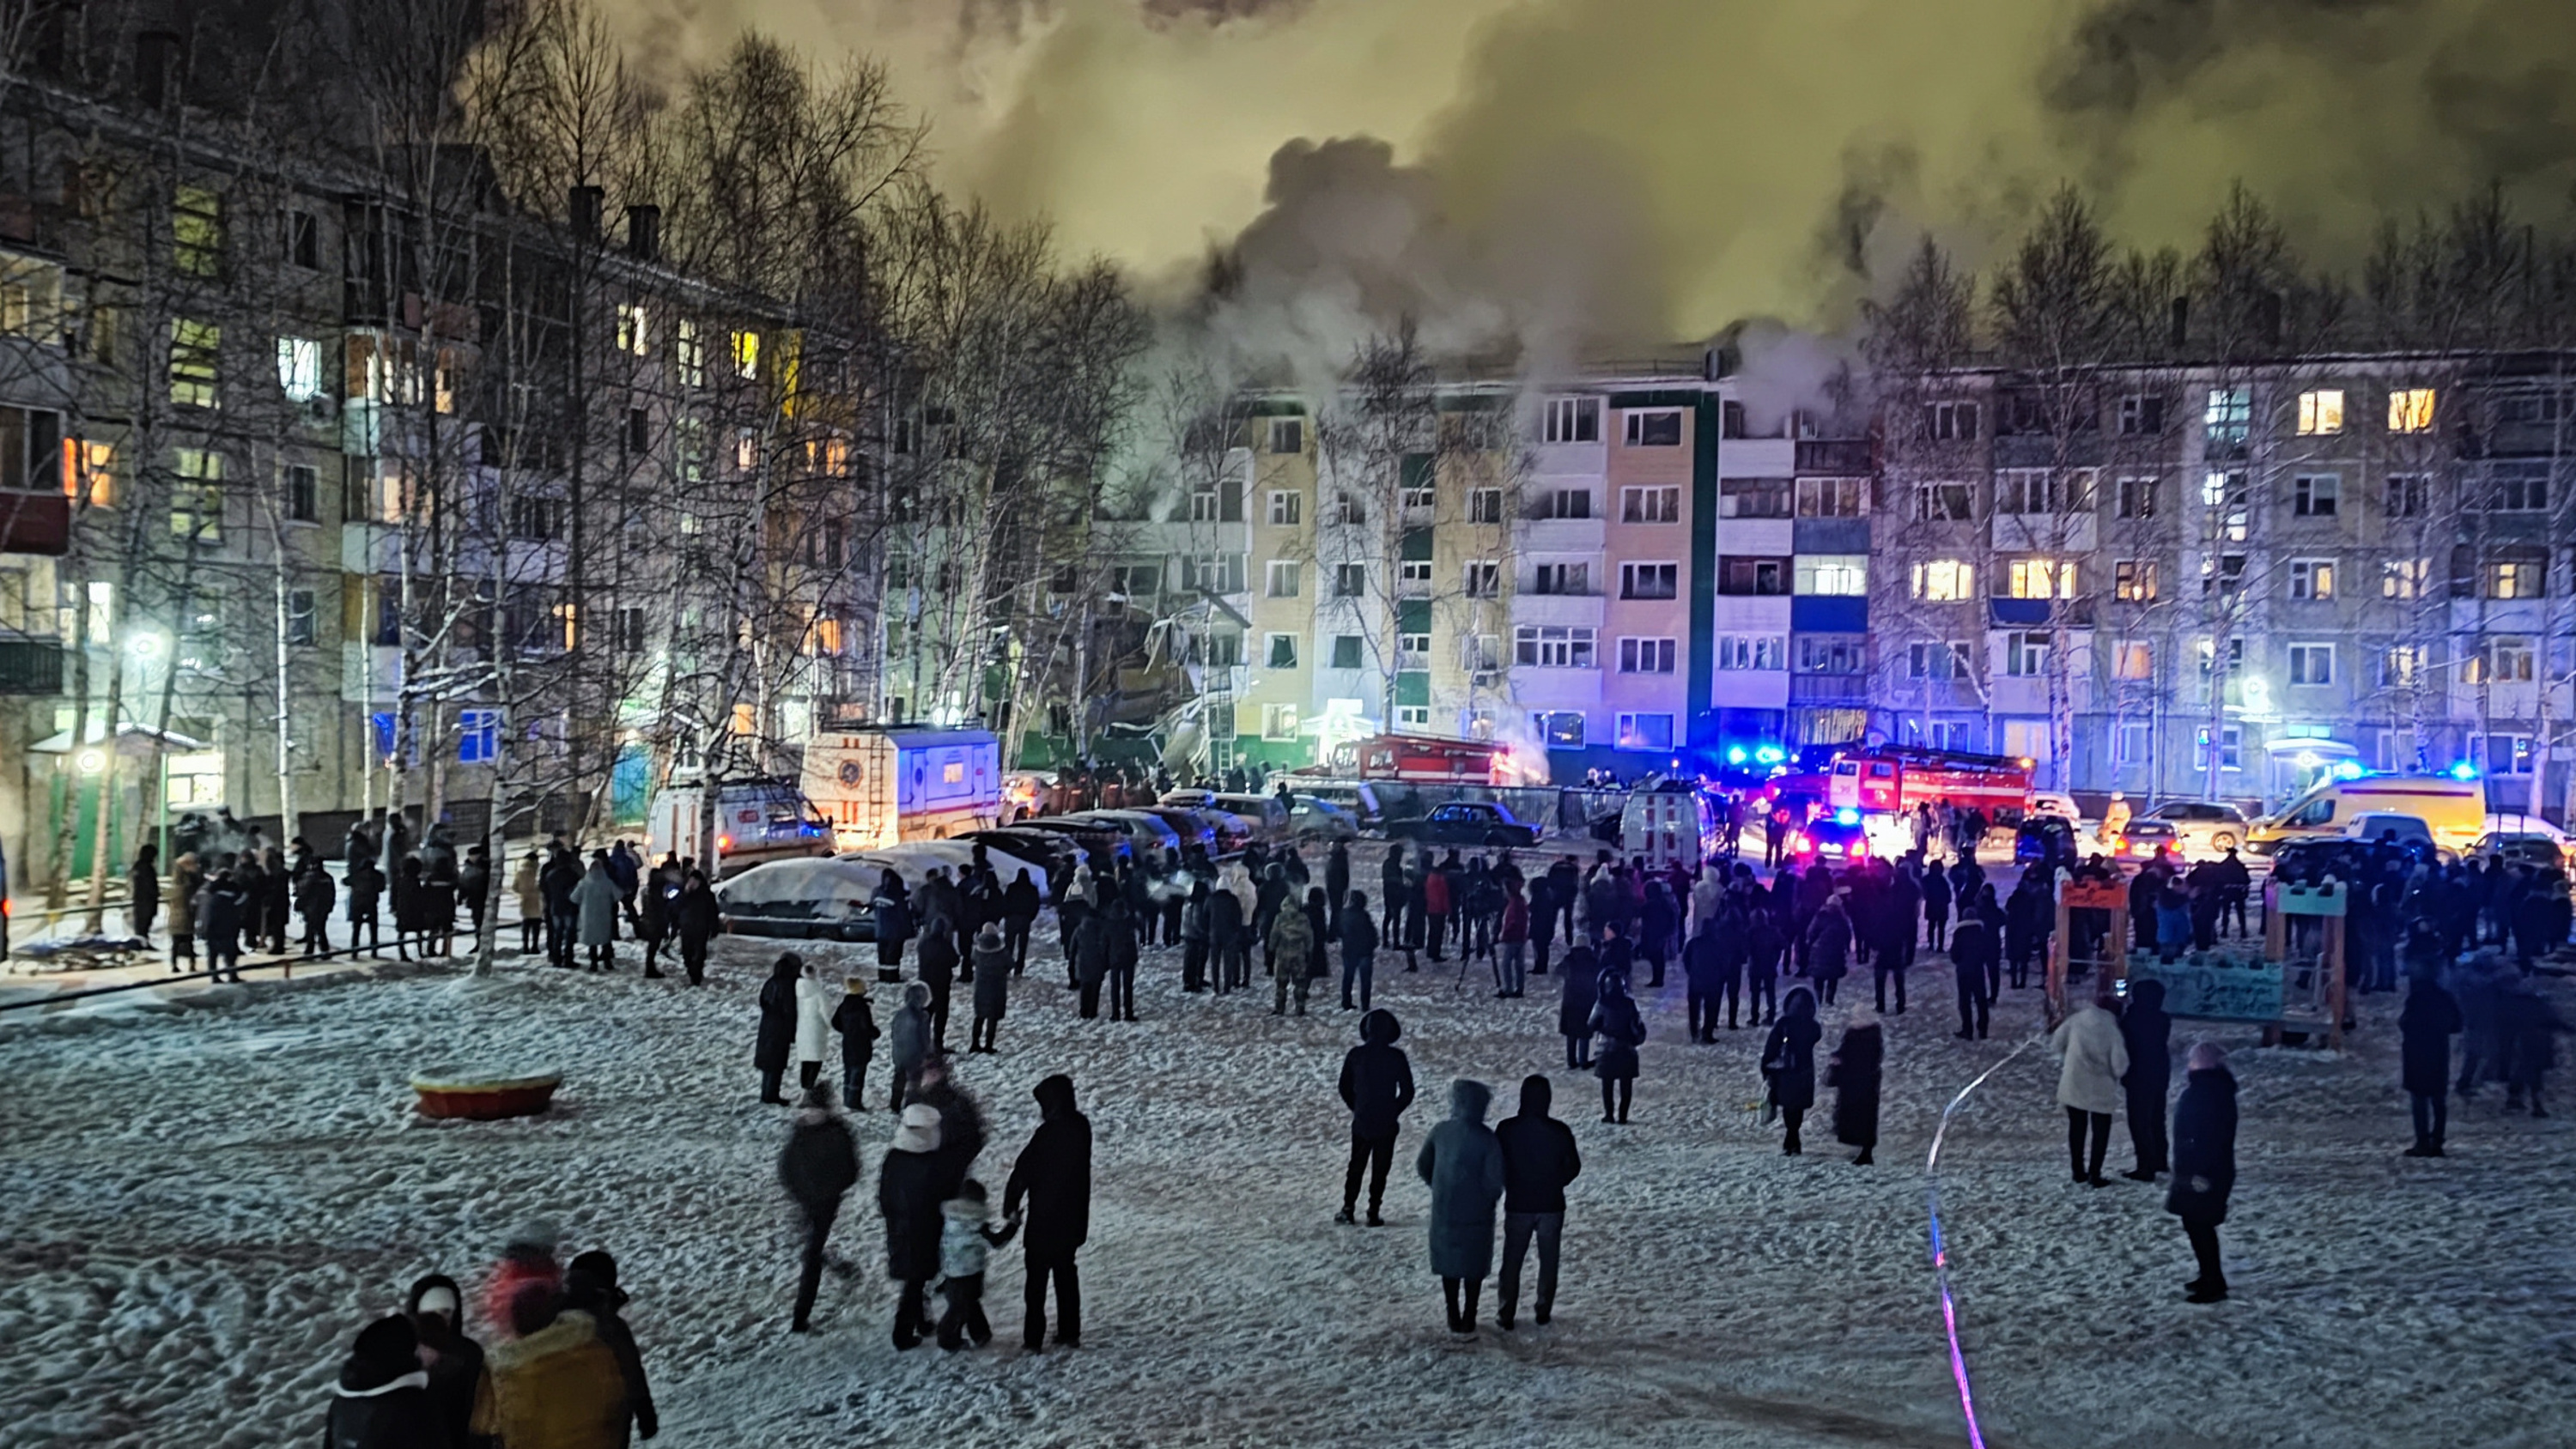 4 декабря 2016. Декабрь в городе. Люди в городе зимой. Взрыв дома в Нижневартовске.